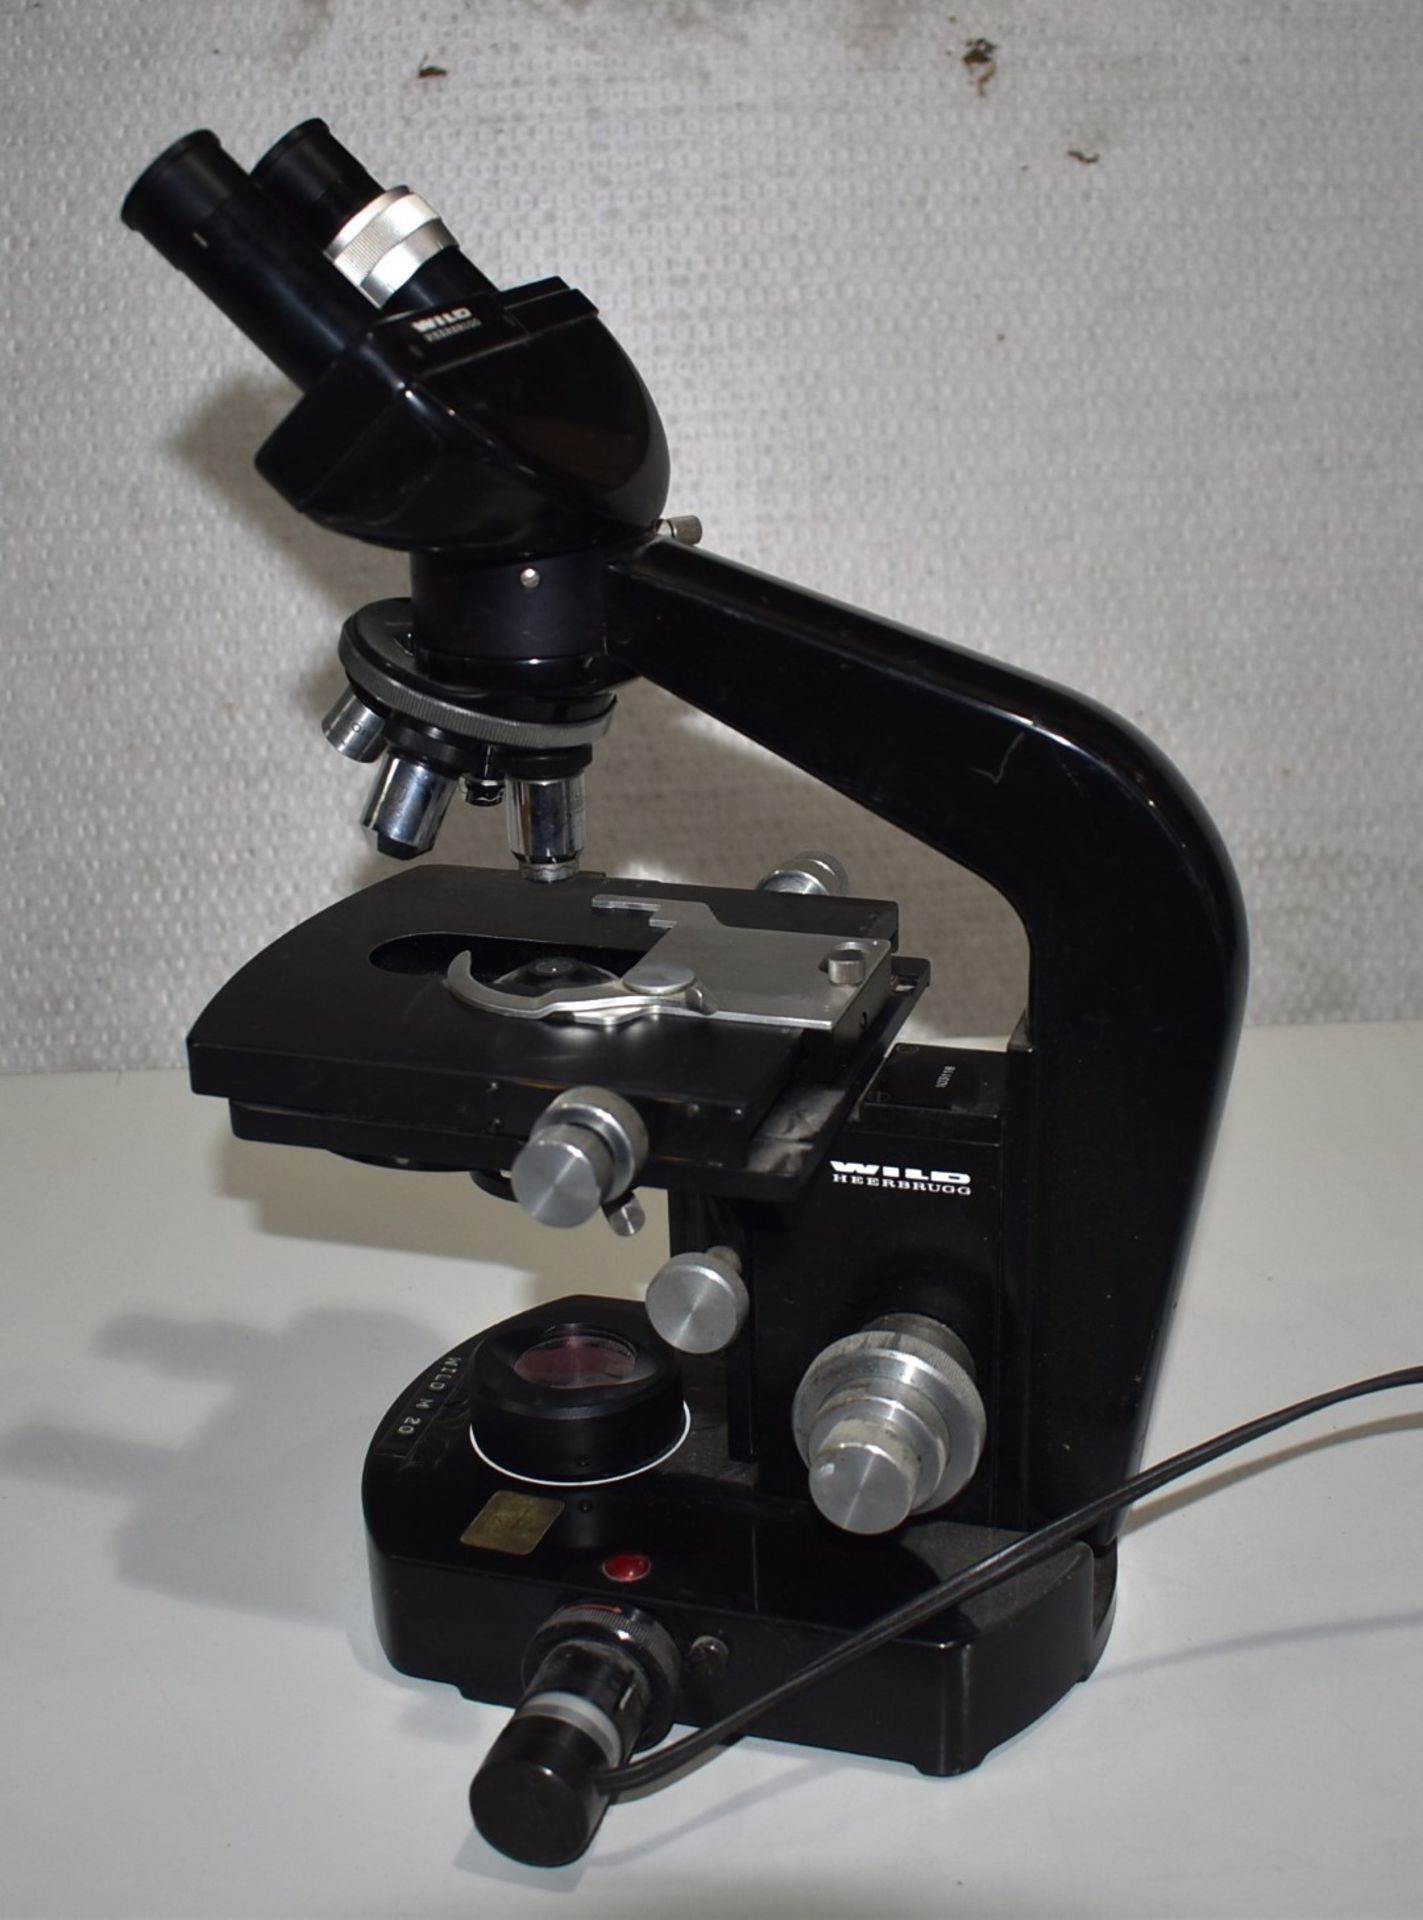 1 x Wild M20 Microscope - Image 8 of 9